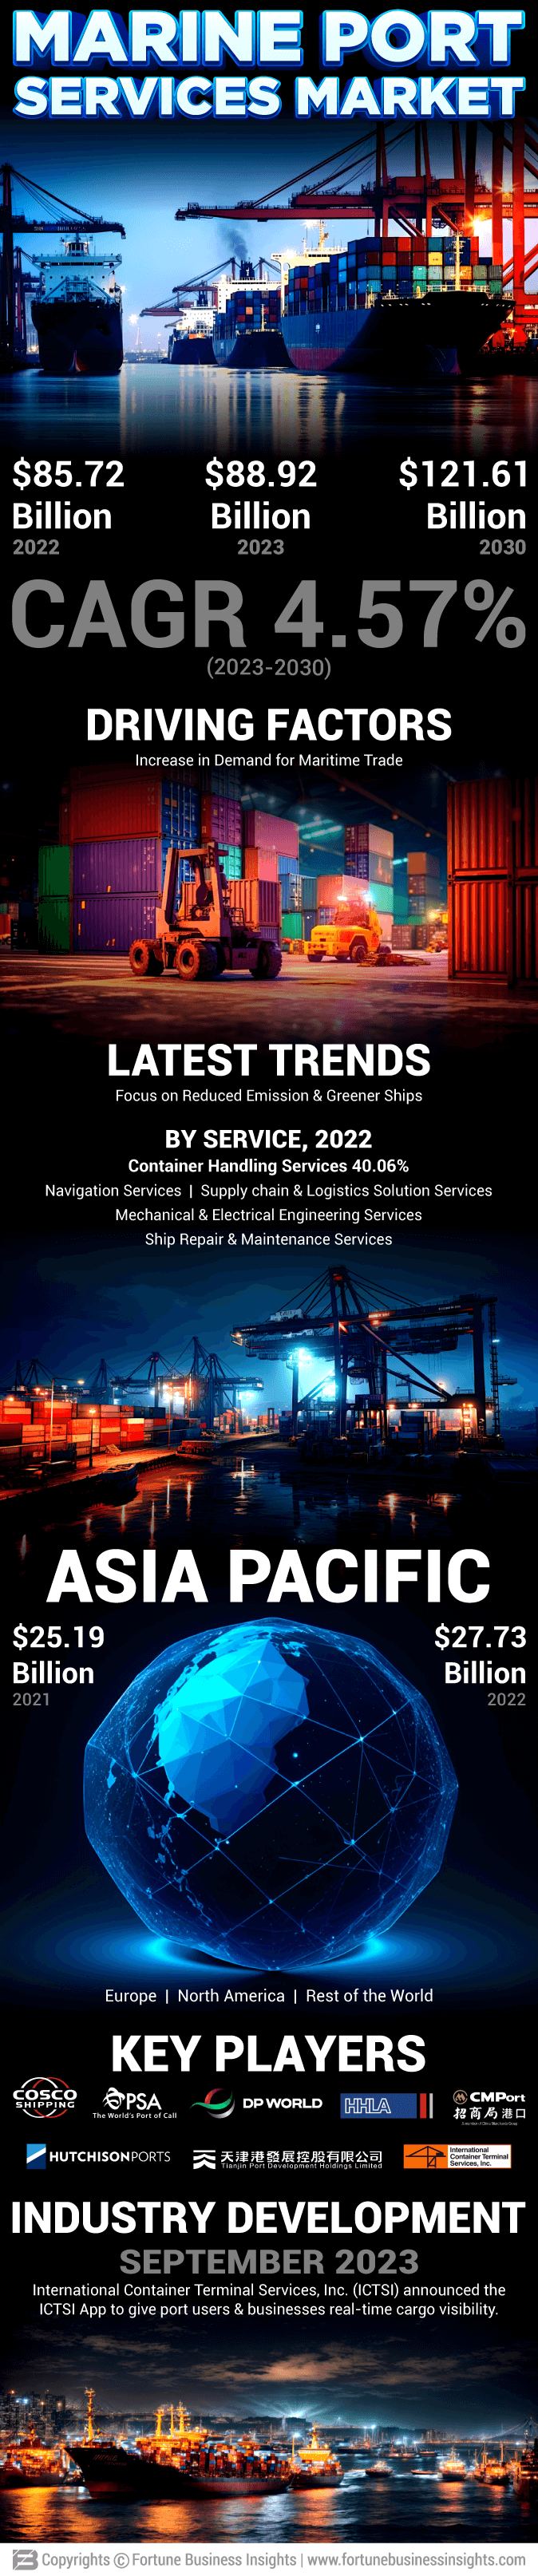 Marine Port Services Market